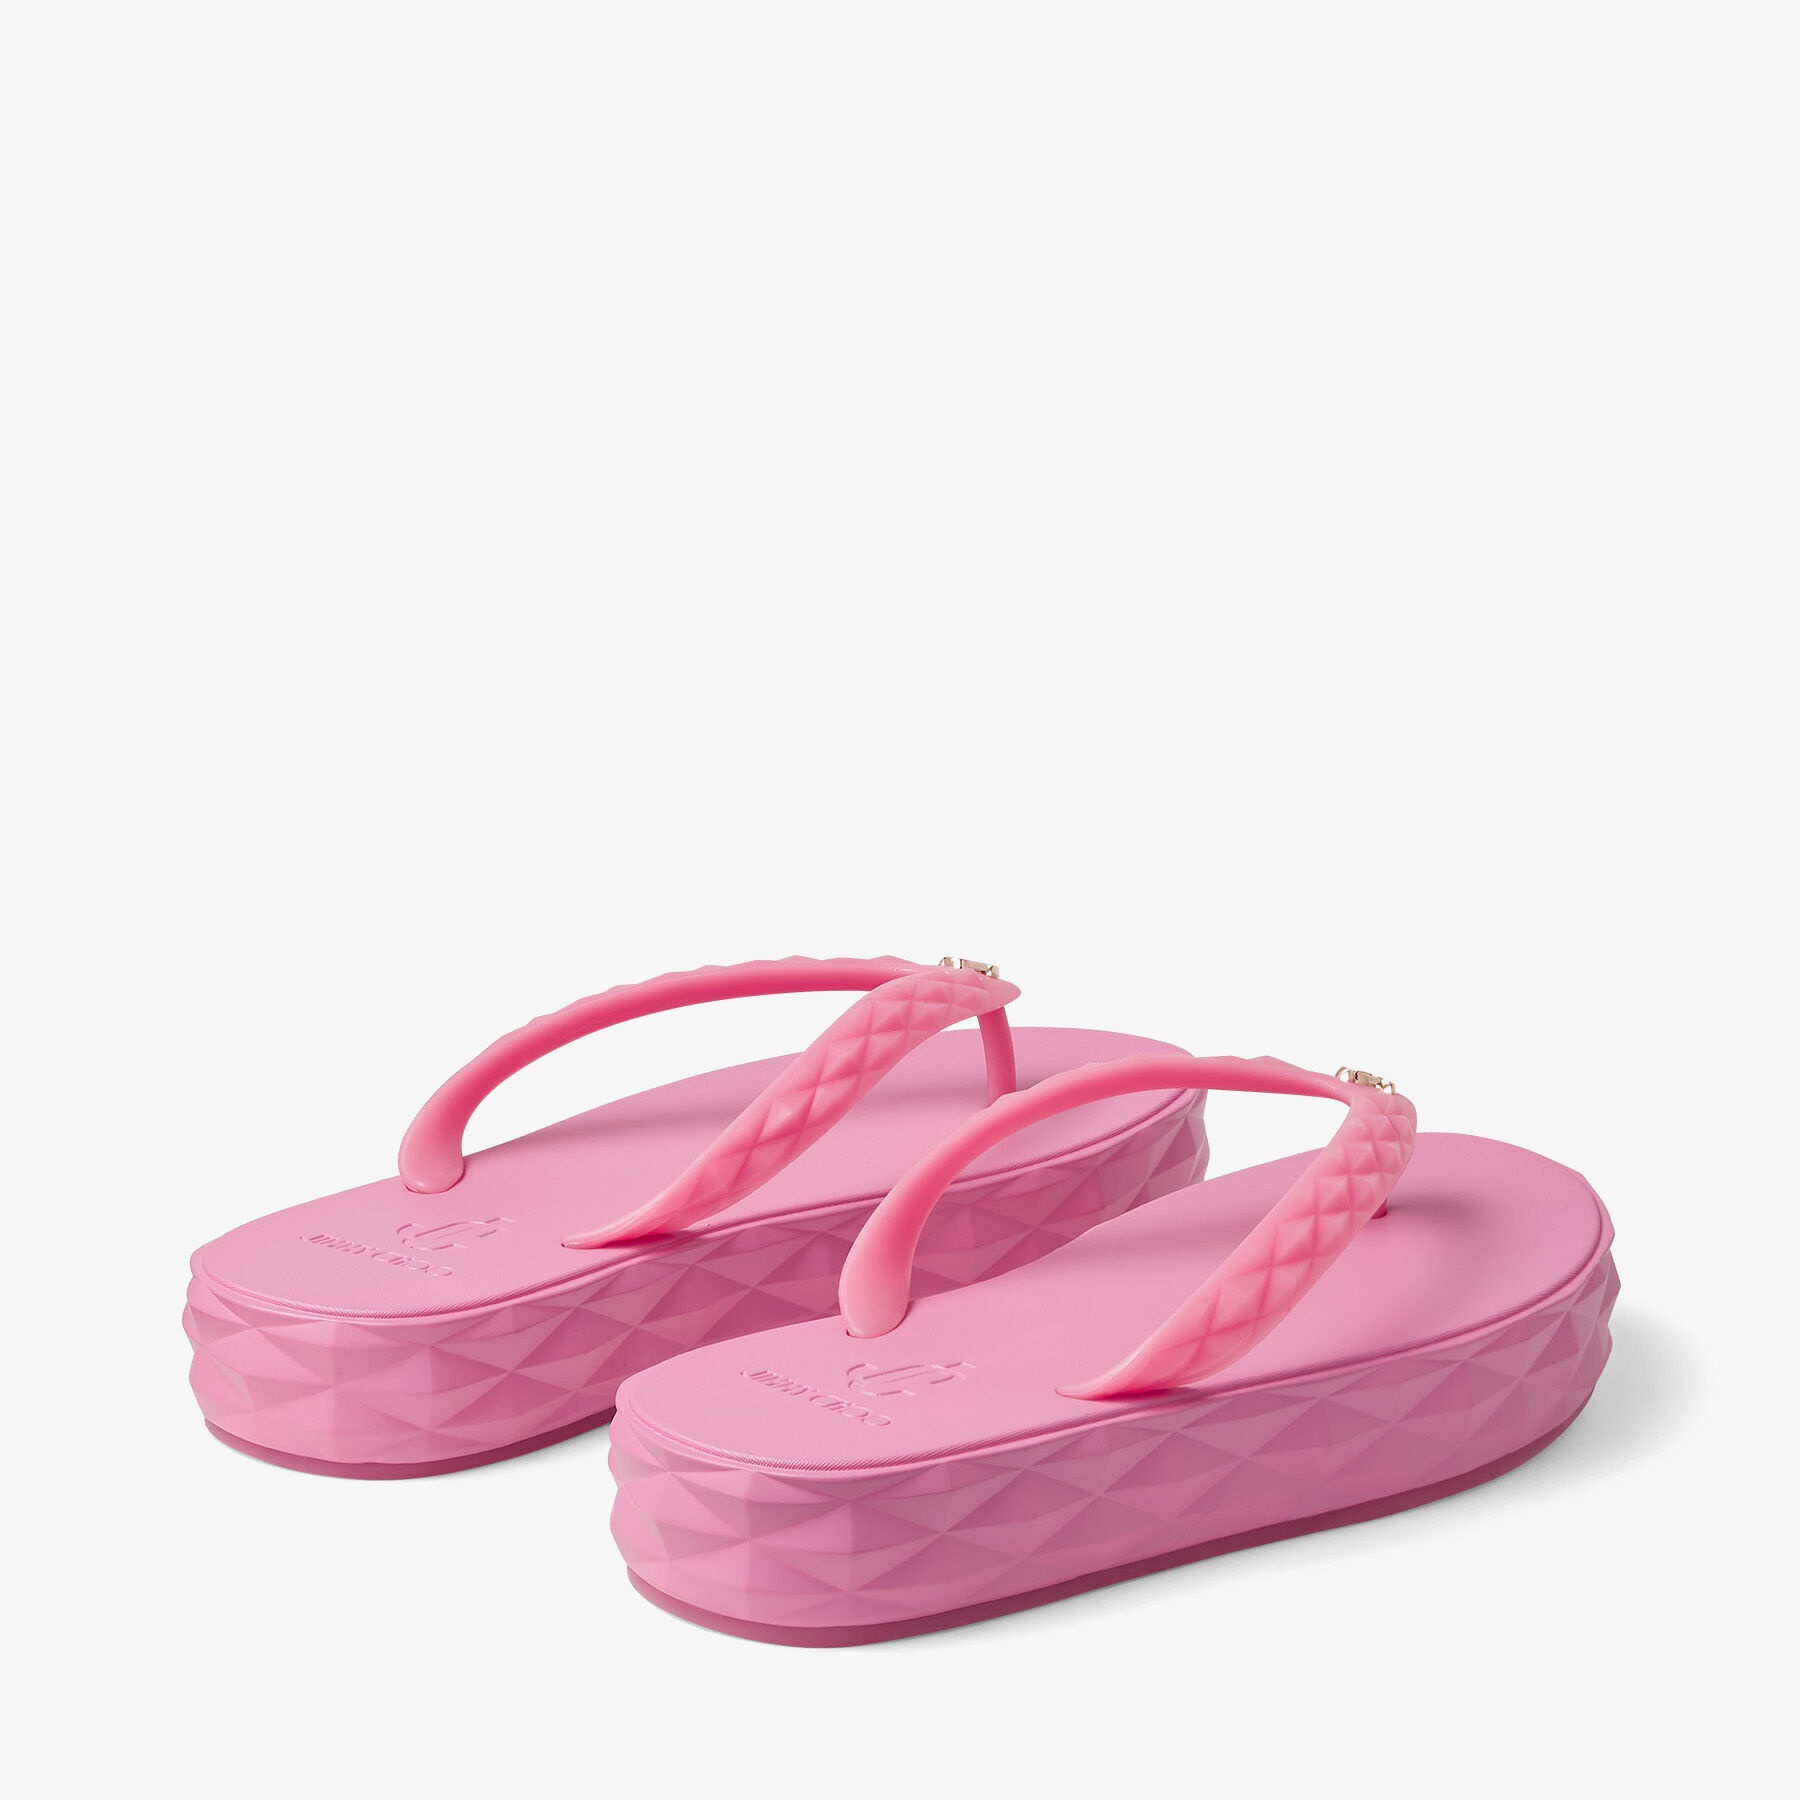 Diamond Flip Flop
Candy Pink Rubber Flip-Flops - 6